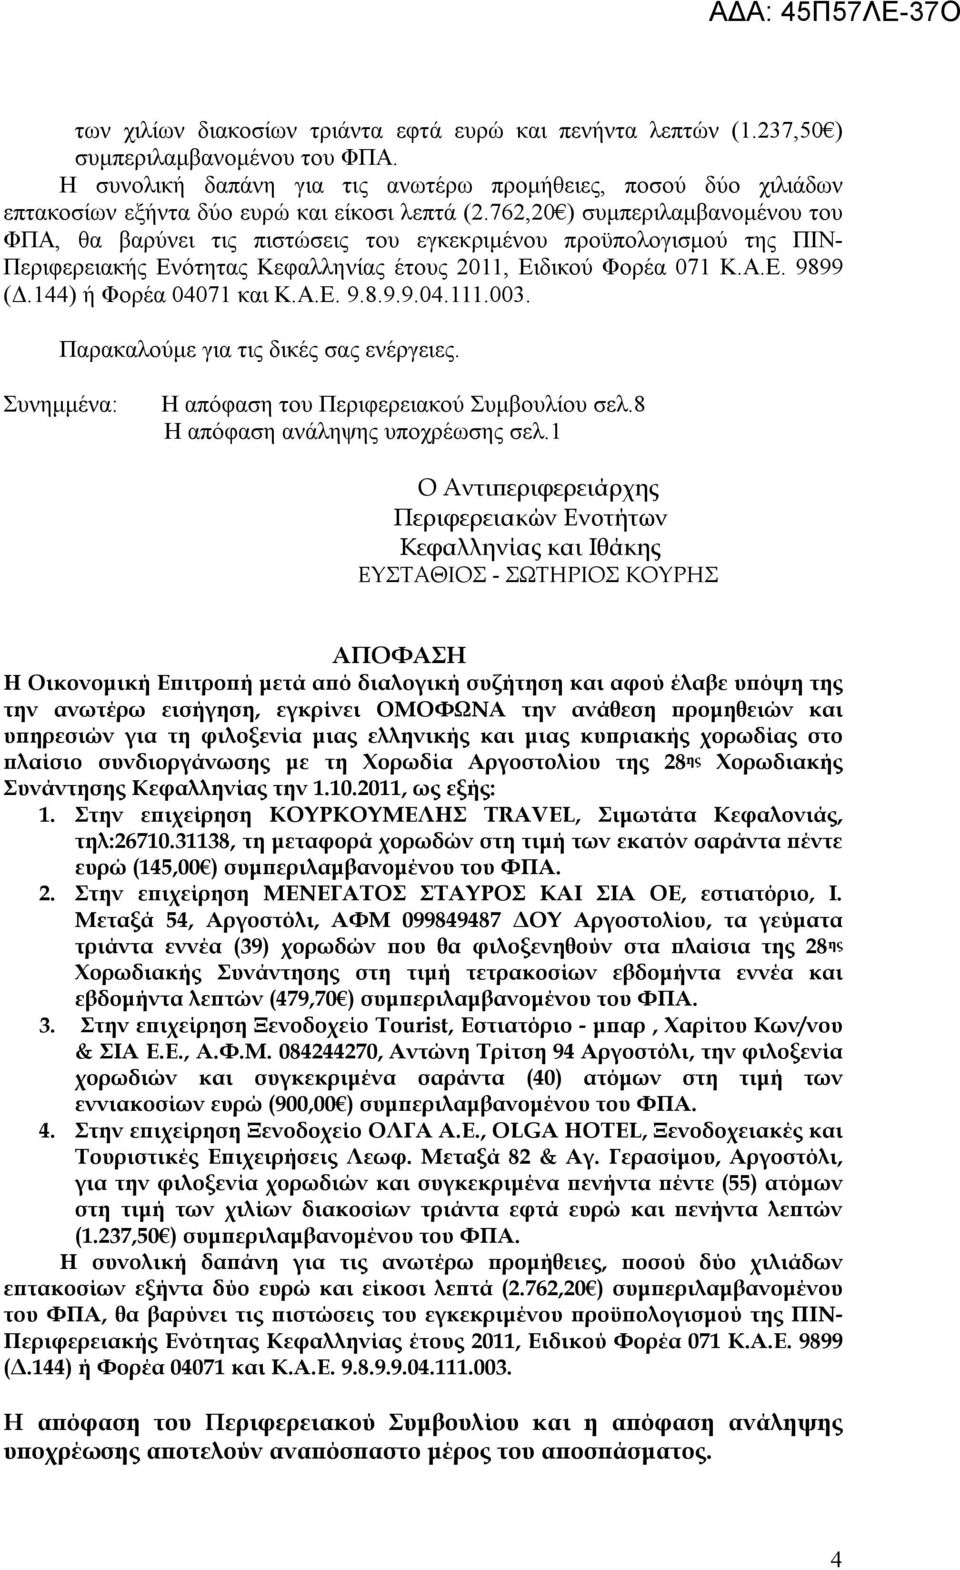 762,20 ) συμπεριλαμβανομένου του ΦΠΑ, θα βαρύνει τις πιστώσεις του εγκεκριμένου προϋπολογισμού της ΠΙΝ- Περιφερειακής Ενότητας Κεφαλληνίας έτους 2011, Ειδικού Φορέα 071 Κ.Α.Ε. 9899 (Δ.